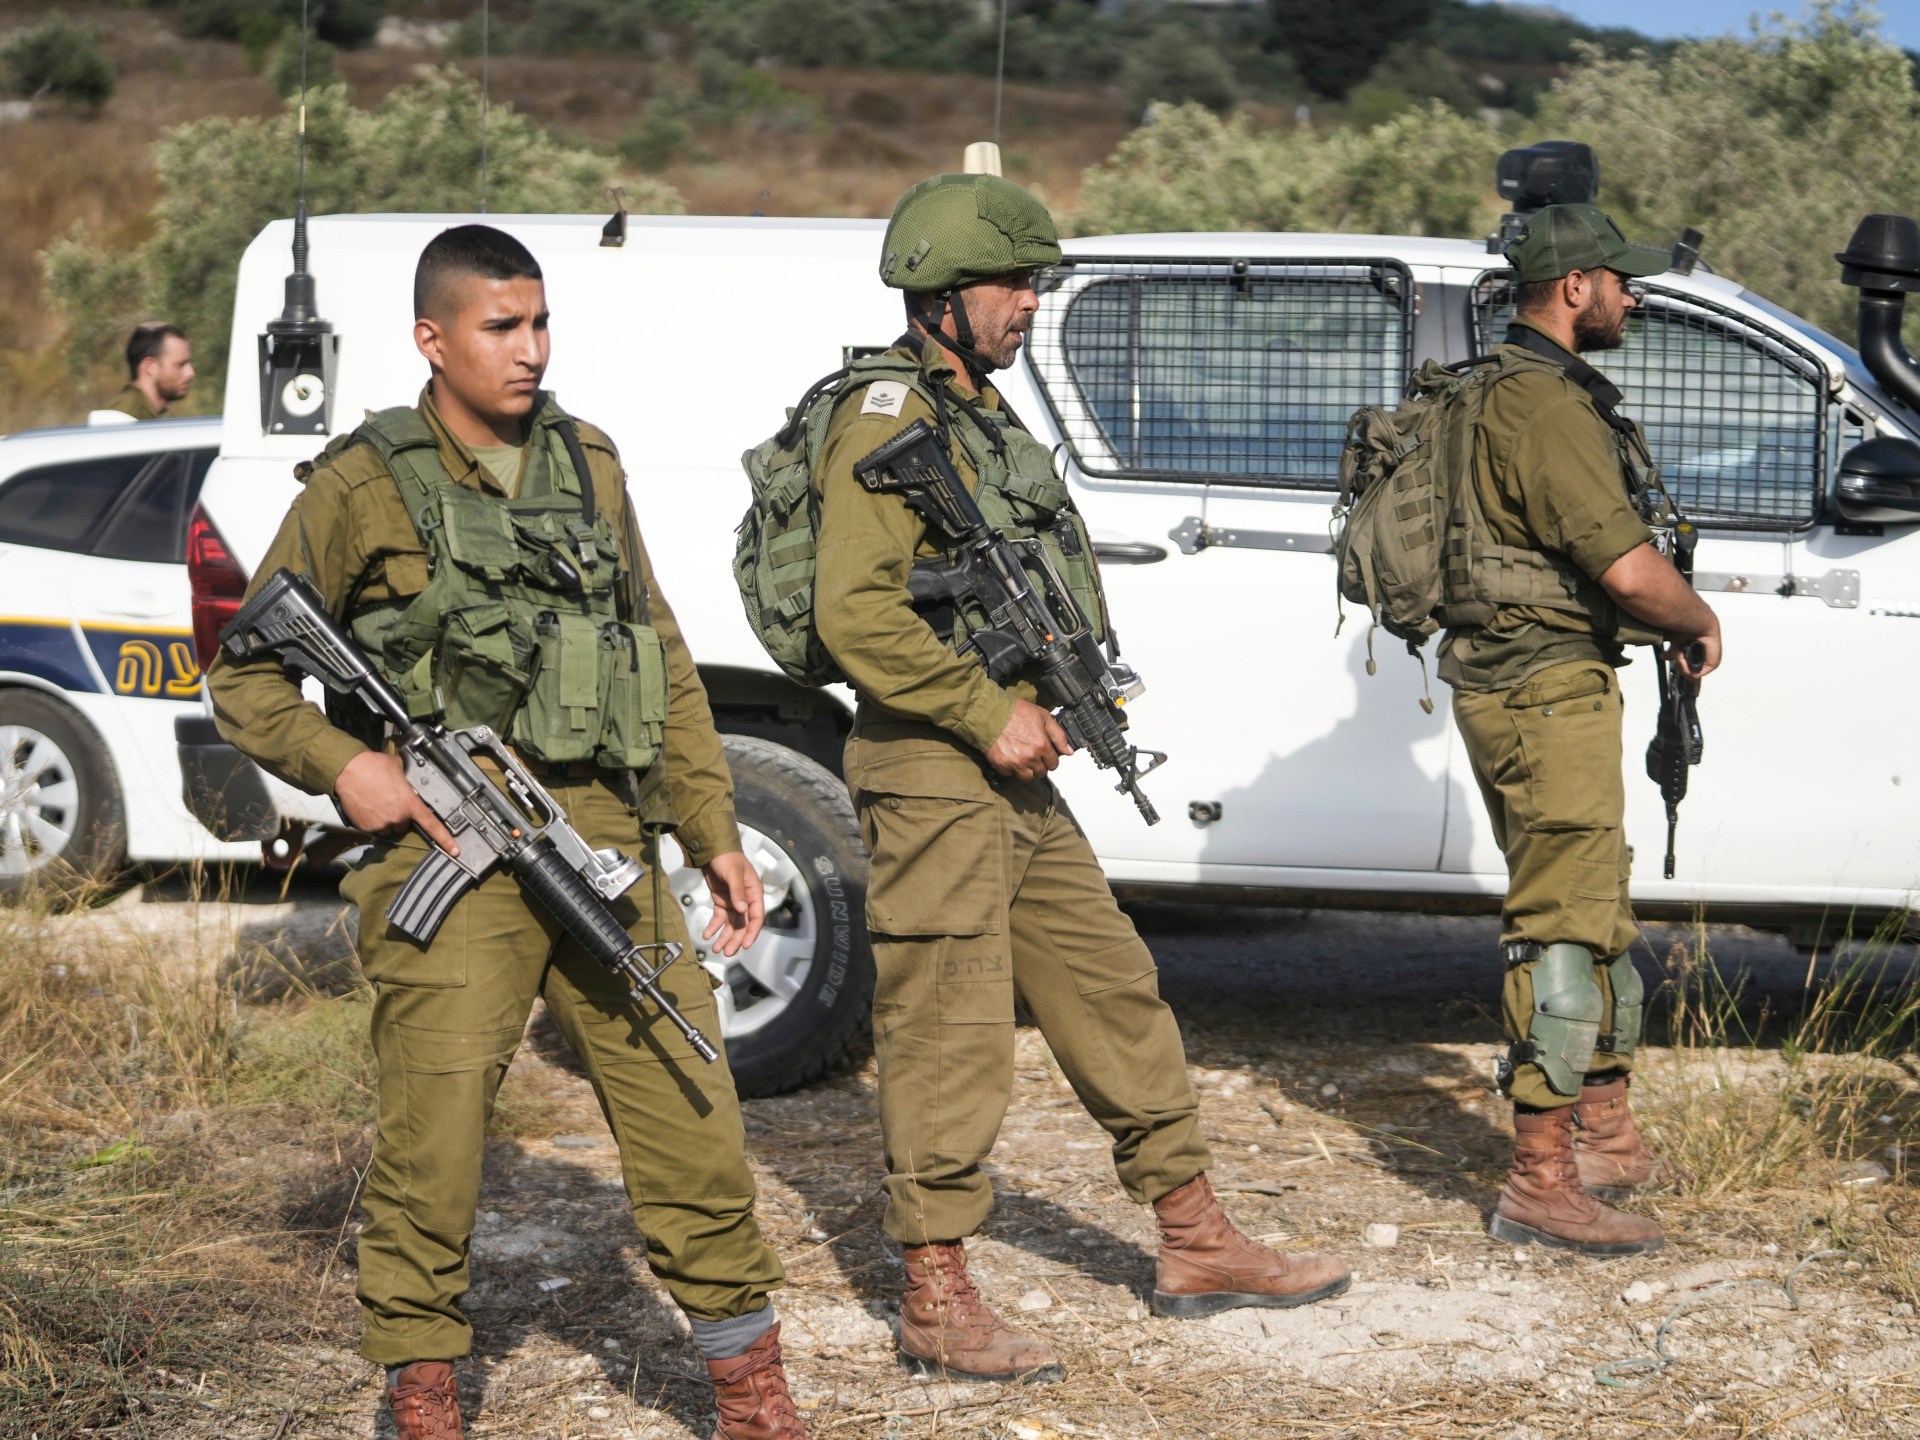 tentara Israel tewas dalam serangan permukiman;  pria bersenjata ditembak mati |  Berita konflik Israel-Palestina